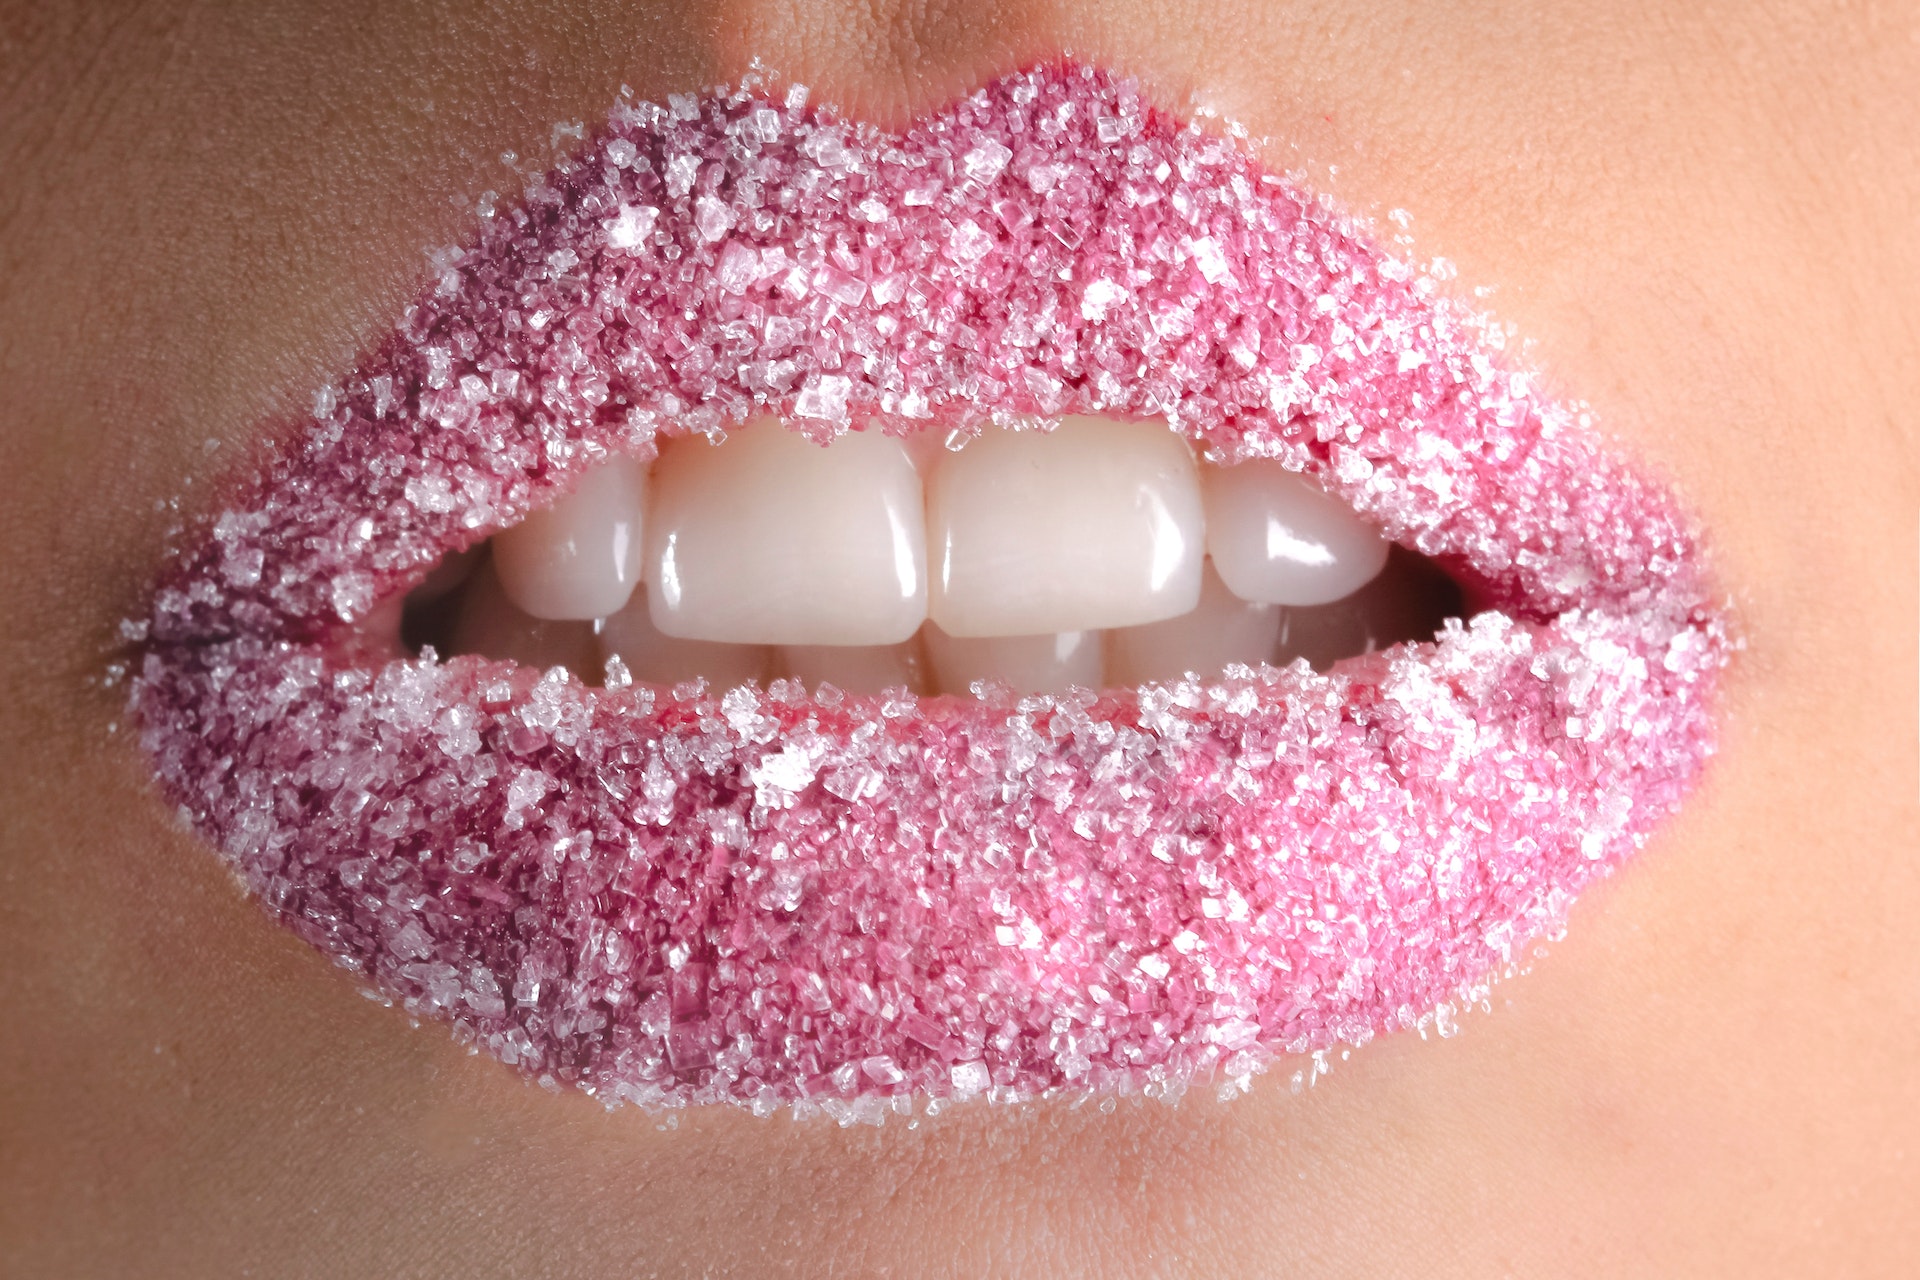 Sta spopolando un nuovo beauty trend: le Diamond Lips, ovvero delle labbra lucenti e impreziosite come diamanti. Ecco come ottenere questo look.